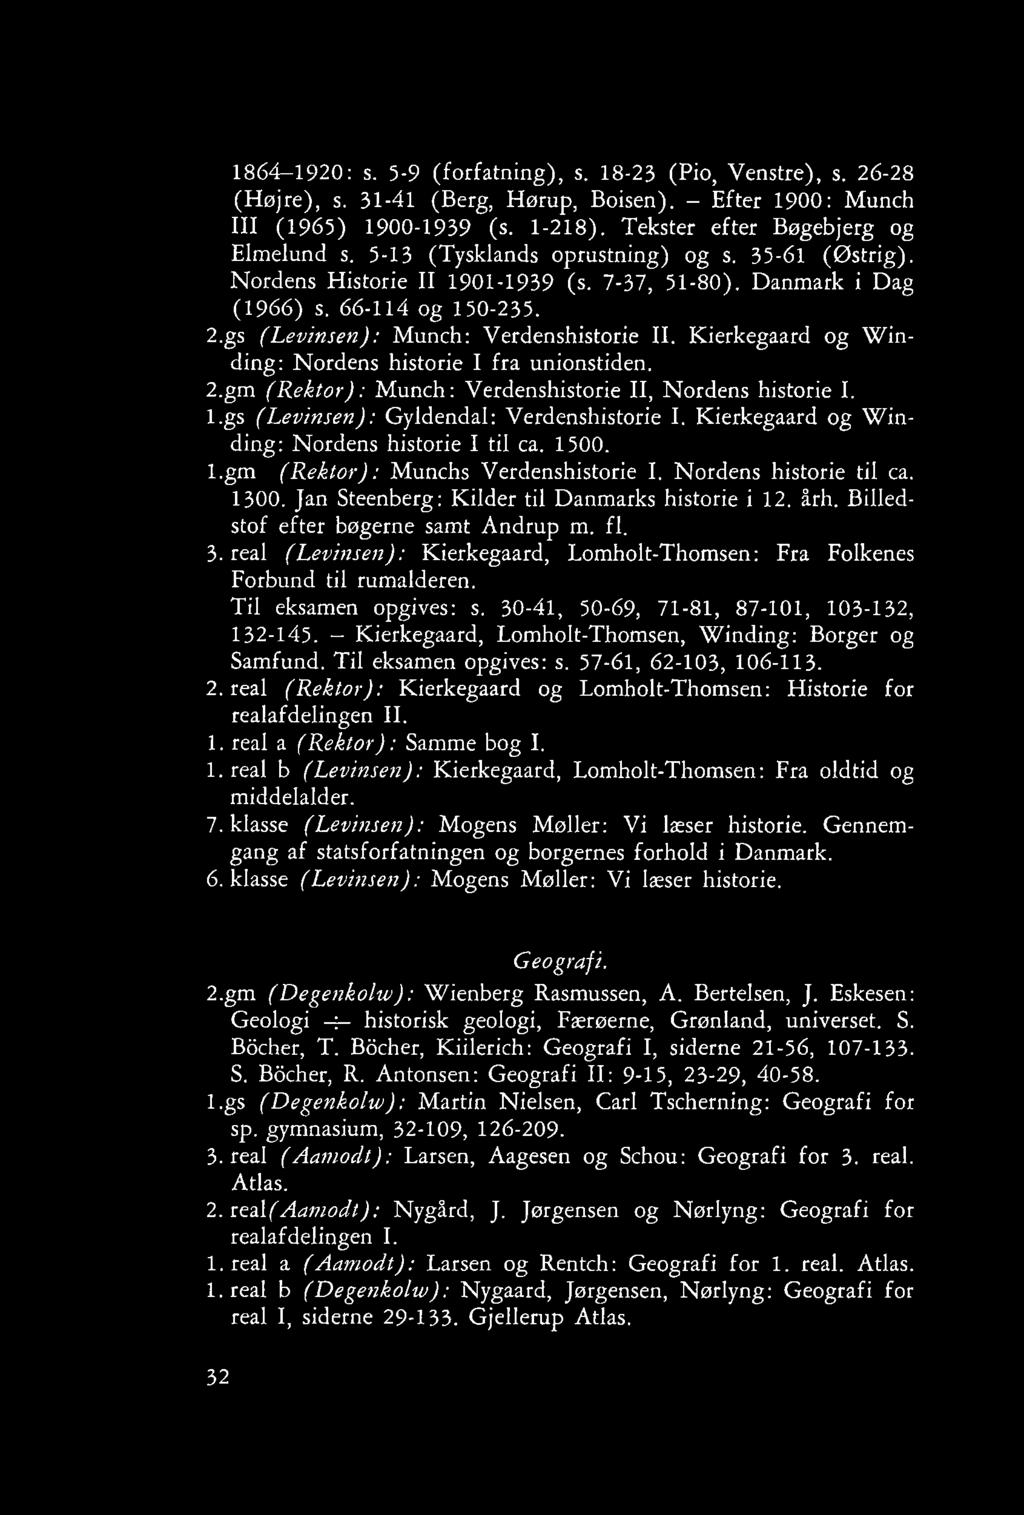 Kierkegaard og Winding: Nordens historie I fra unionstiden. 2.gm (Rektor): Munch: Verdenshistorie II, Nordens historie I. l.gs (Levinsen): Gyldendal: Verdenshistorie I.